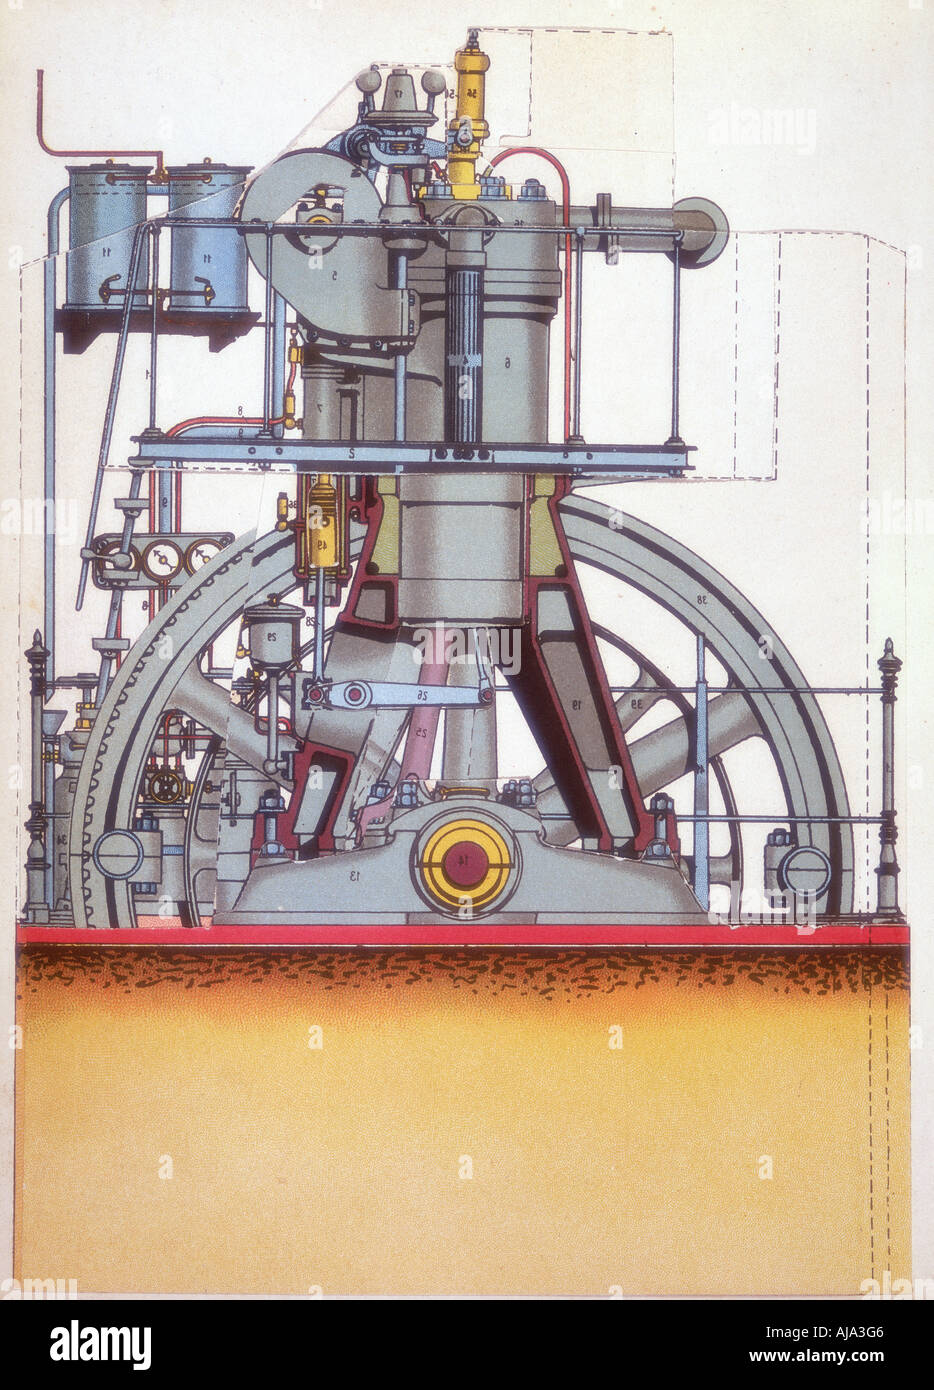 Motore diesel: motore a combustione interna inventato da Rudolph Diesel nel 1897 (c1910). Artista: sconosciuto Foto Stock